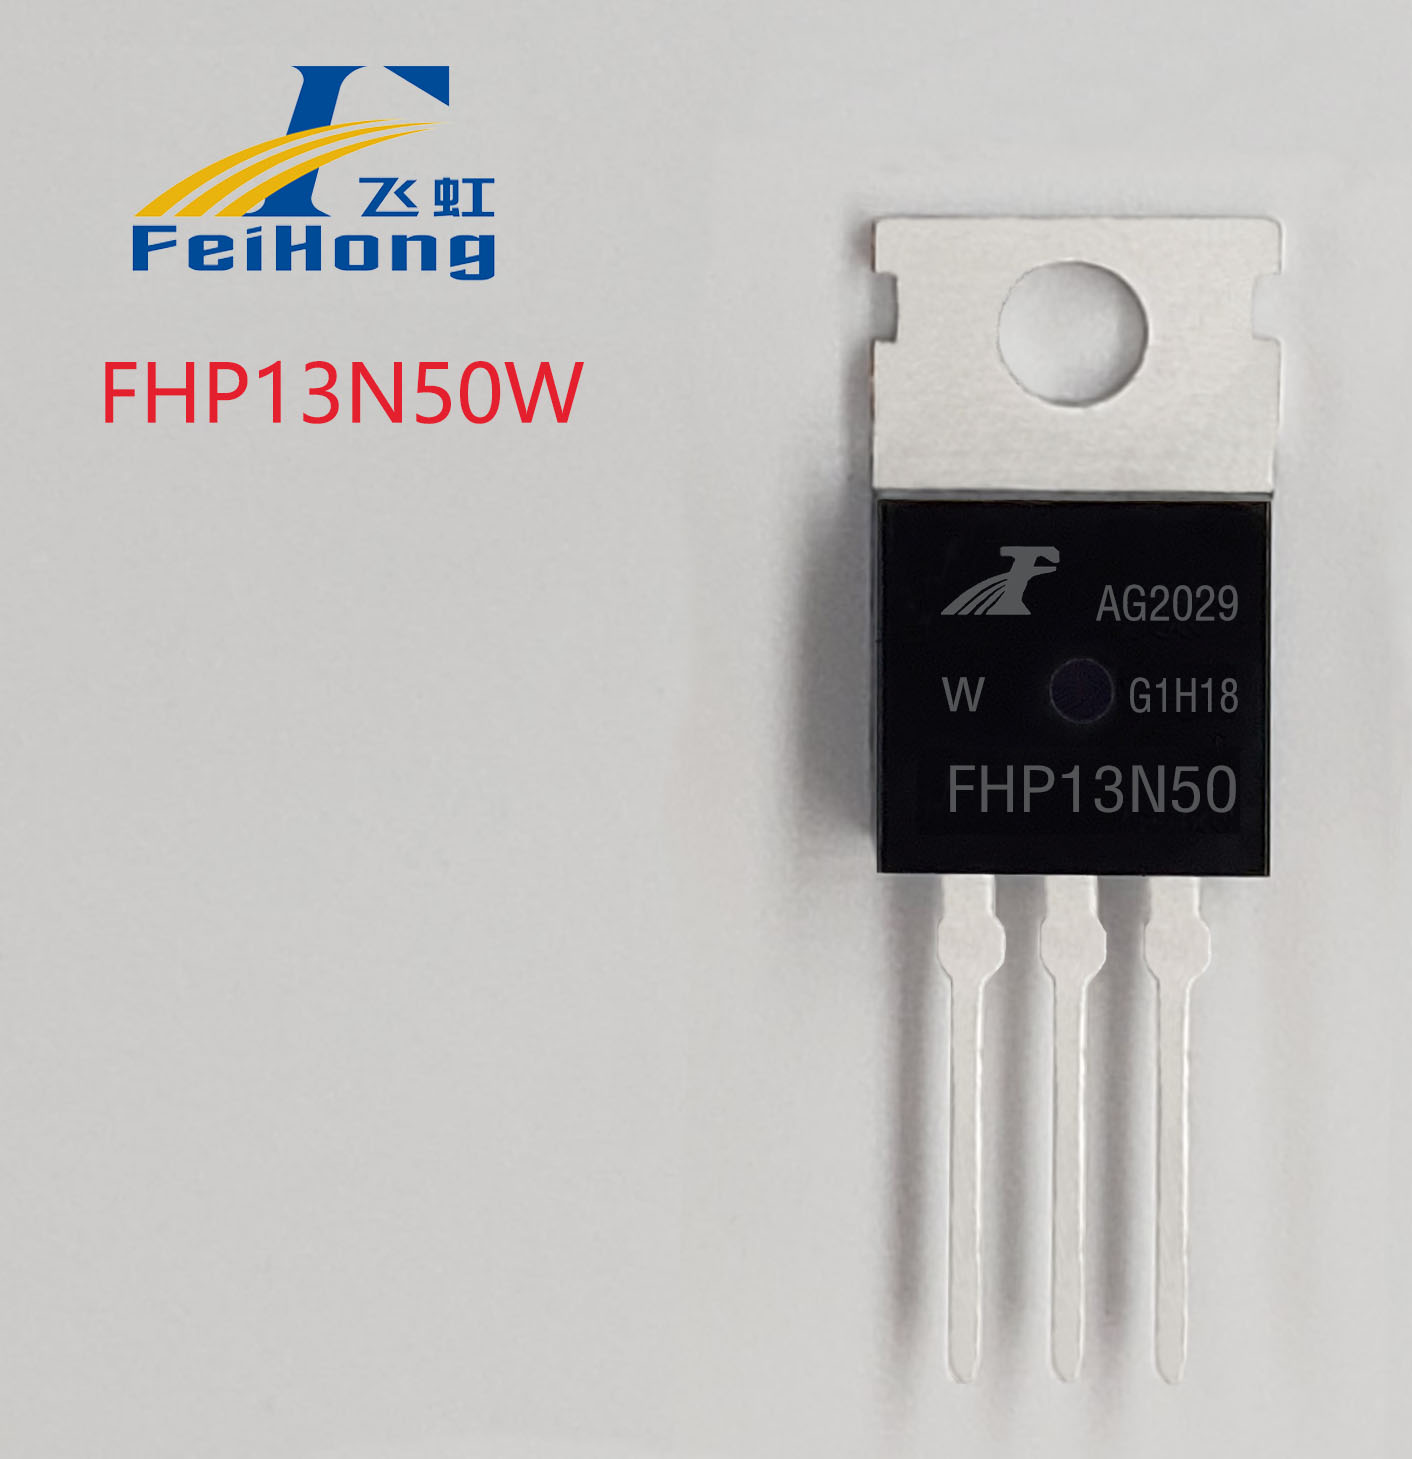 FHP13N50W FHF13N50W